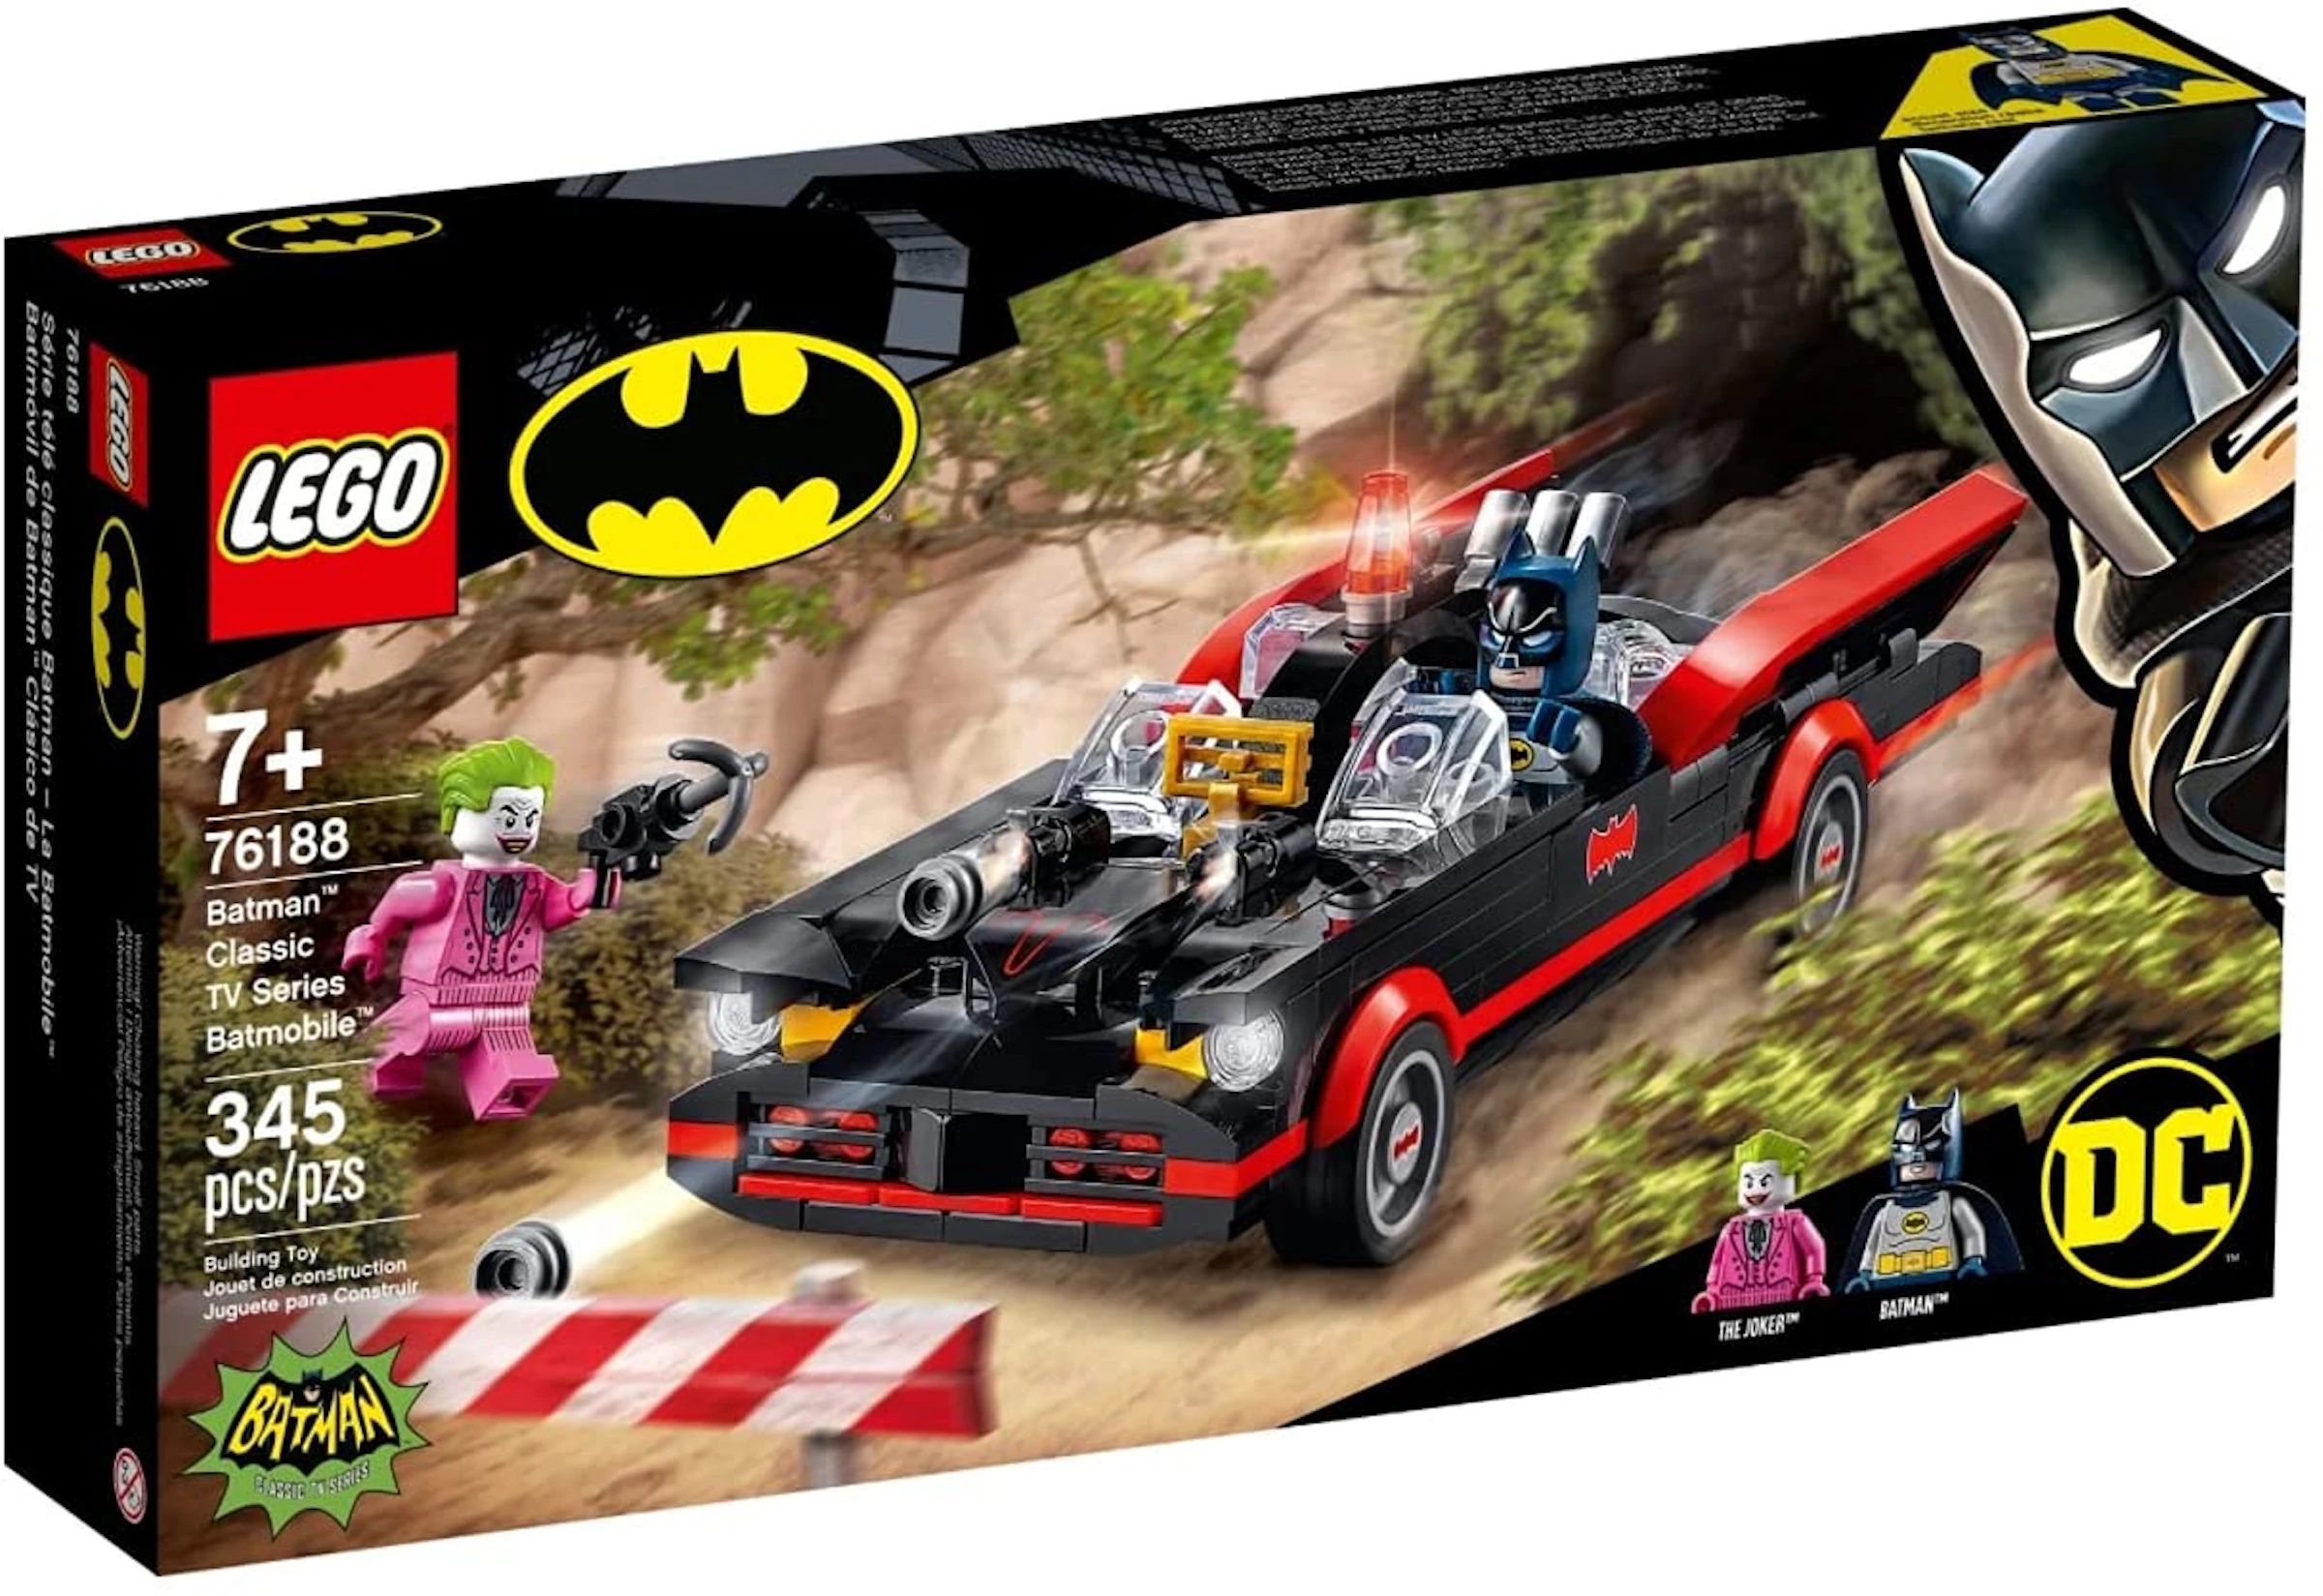 LEGO DC Batman - Batman Classic TV Series Batmobile Set 76188 - SS21 - US